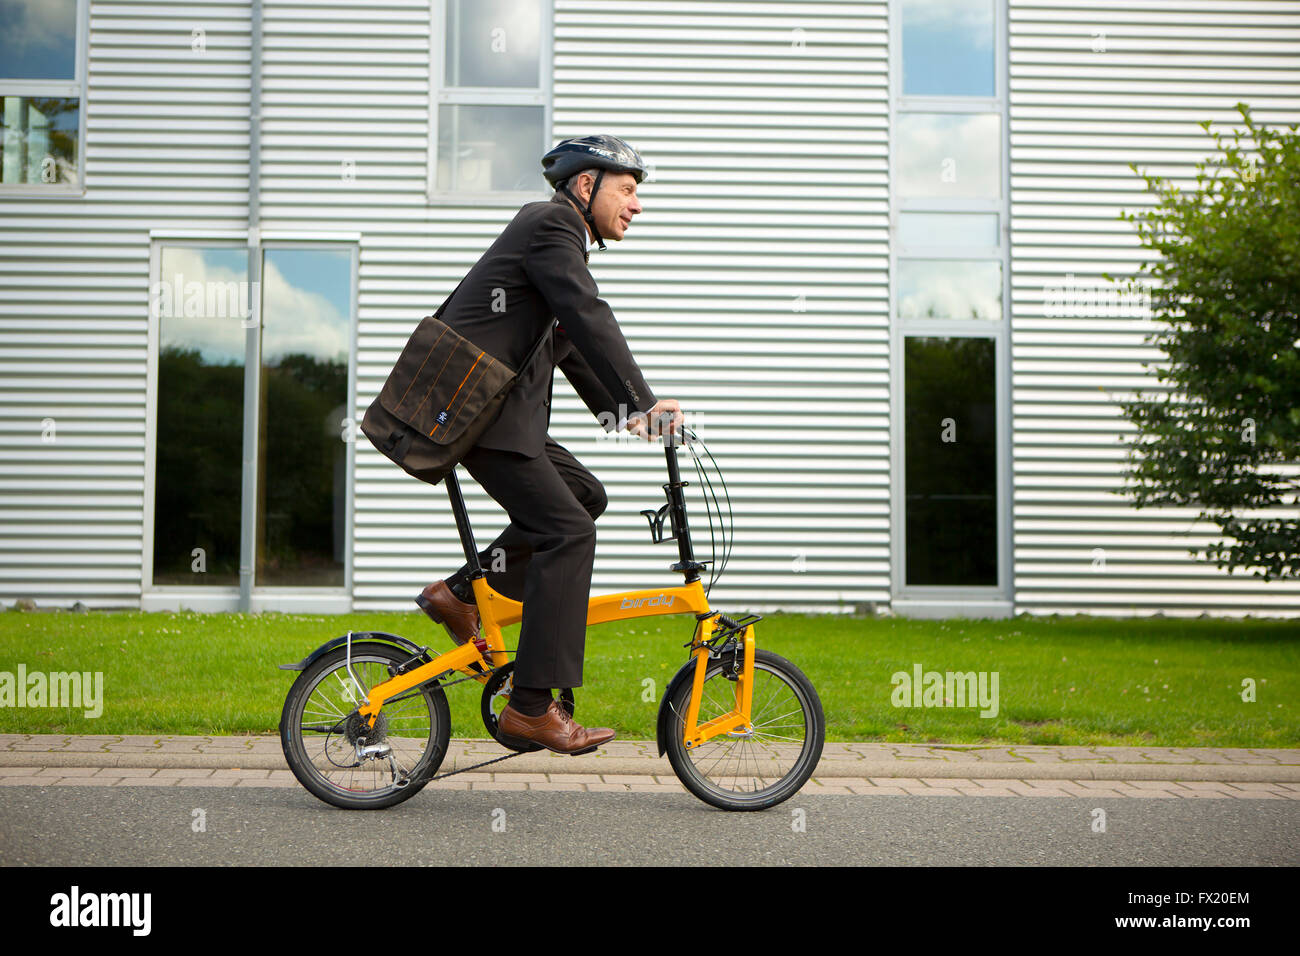 Empresario con casco montando una bicicleta plegable para trabajar Foto de stock